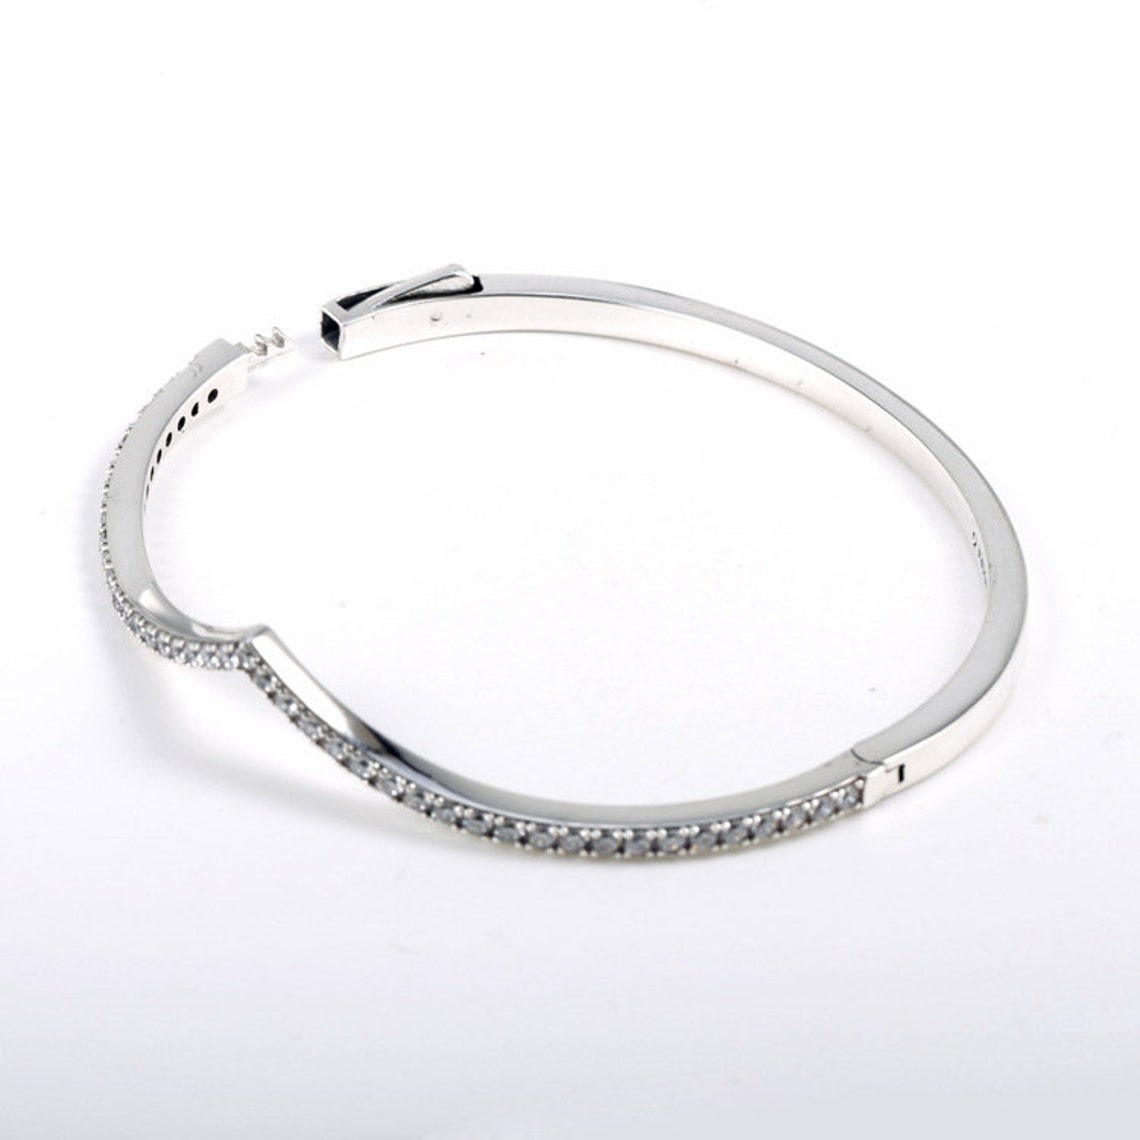 Pandora bracelet Shimmering Wish Bangle 597837CZ with gift | Etsy